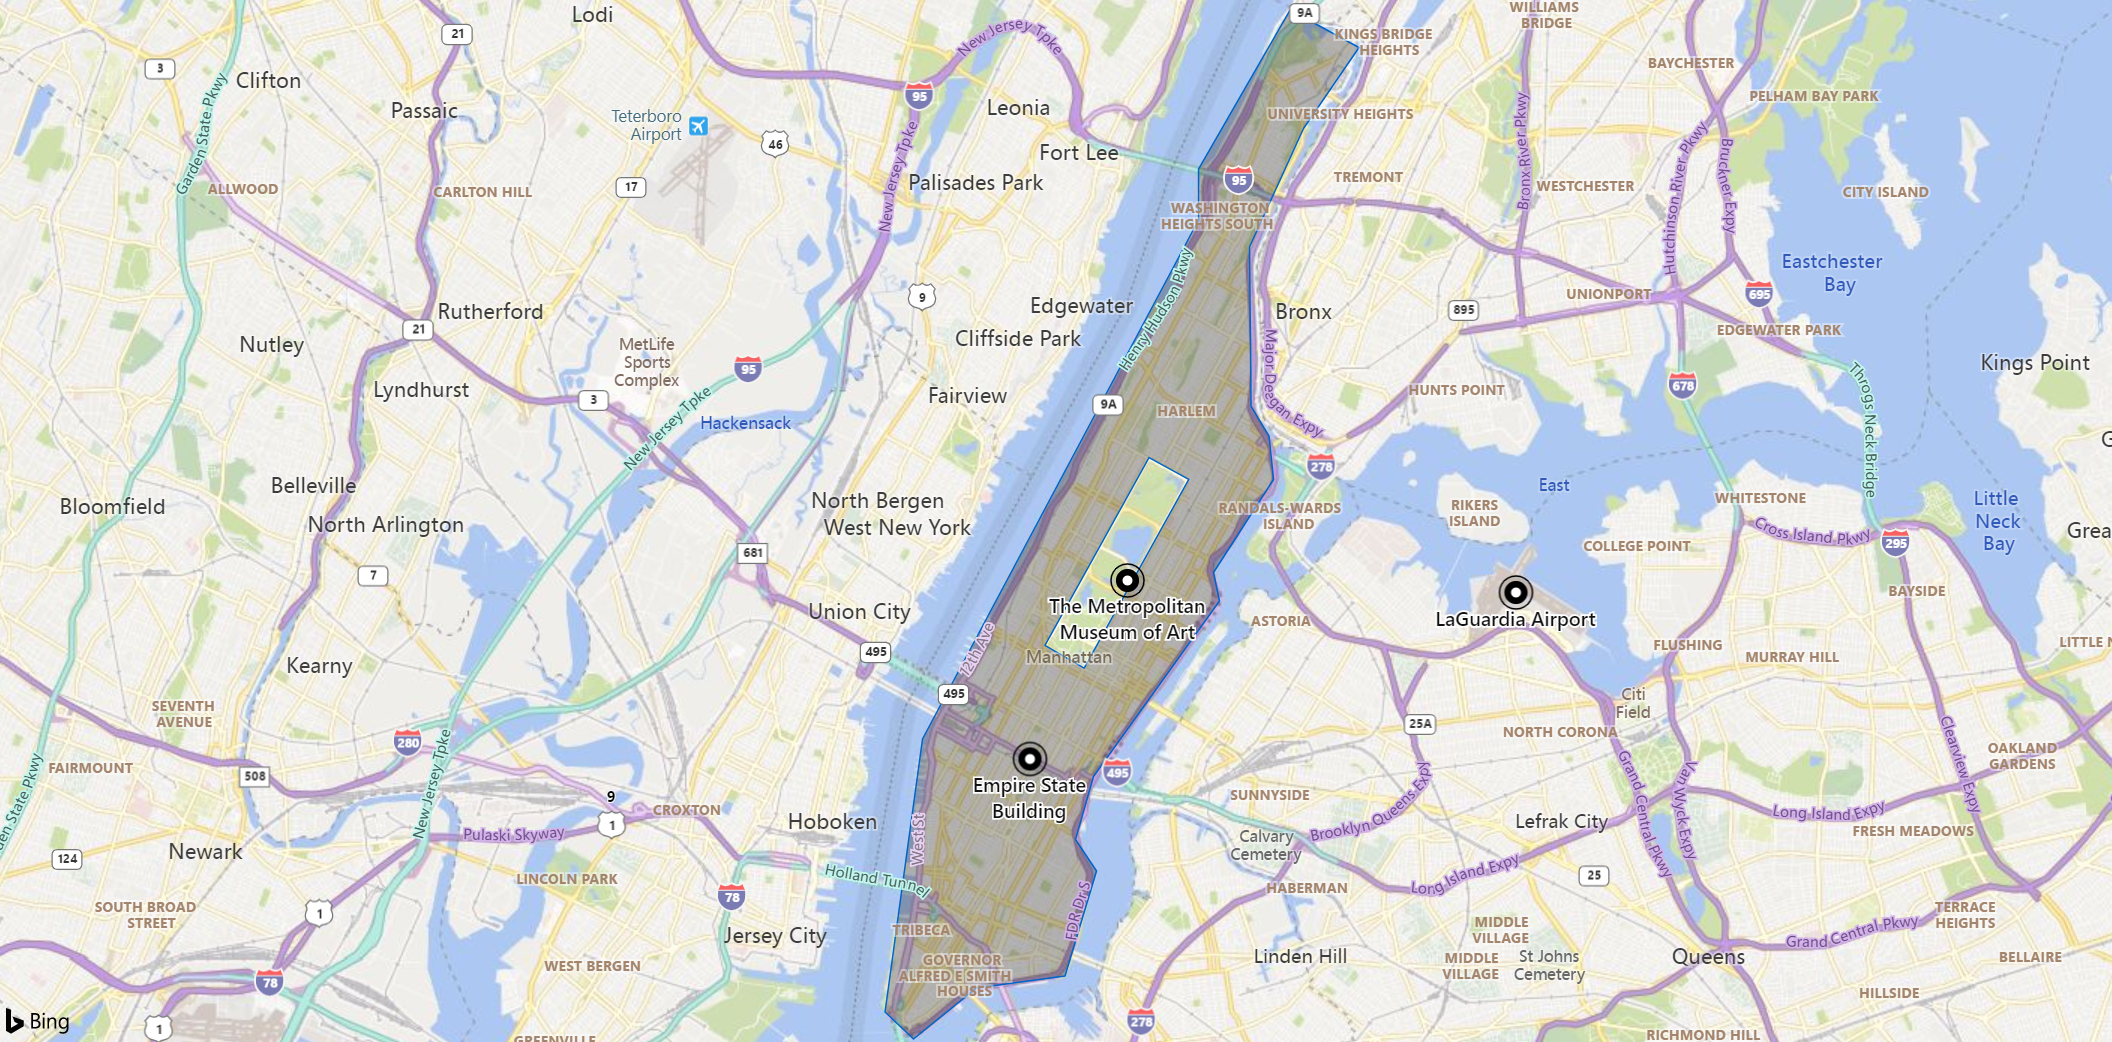 Cuplikan layar peta area Manhattan, dengan penanda untuk landmark, museum, dan bandara. Pulau itu tampak redup kecuali Central Park.